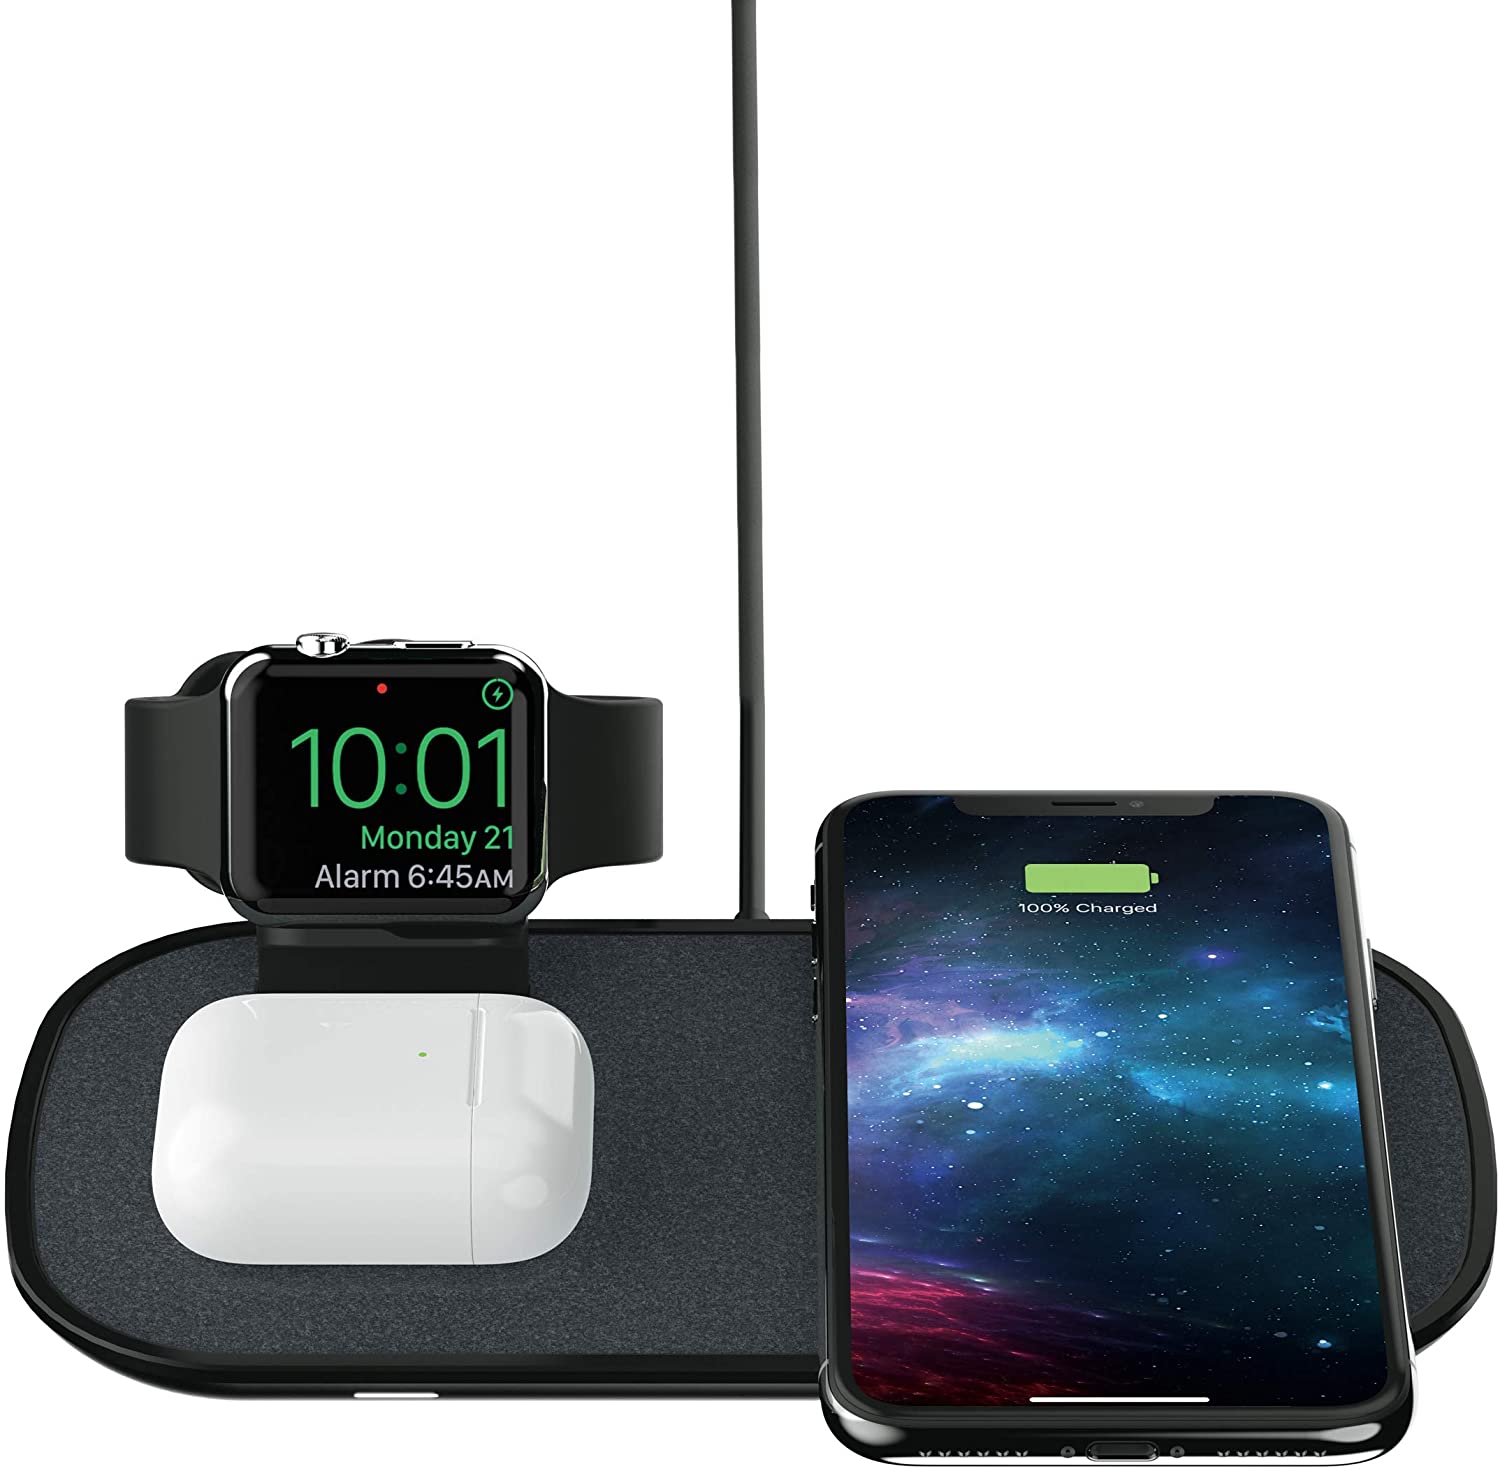 i migliori caricabatterie wireless per iPhone, Apple Watch e AirPods